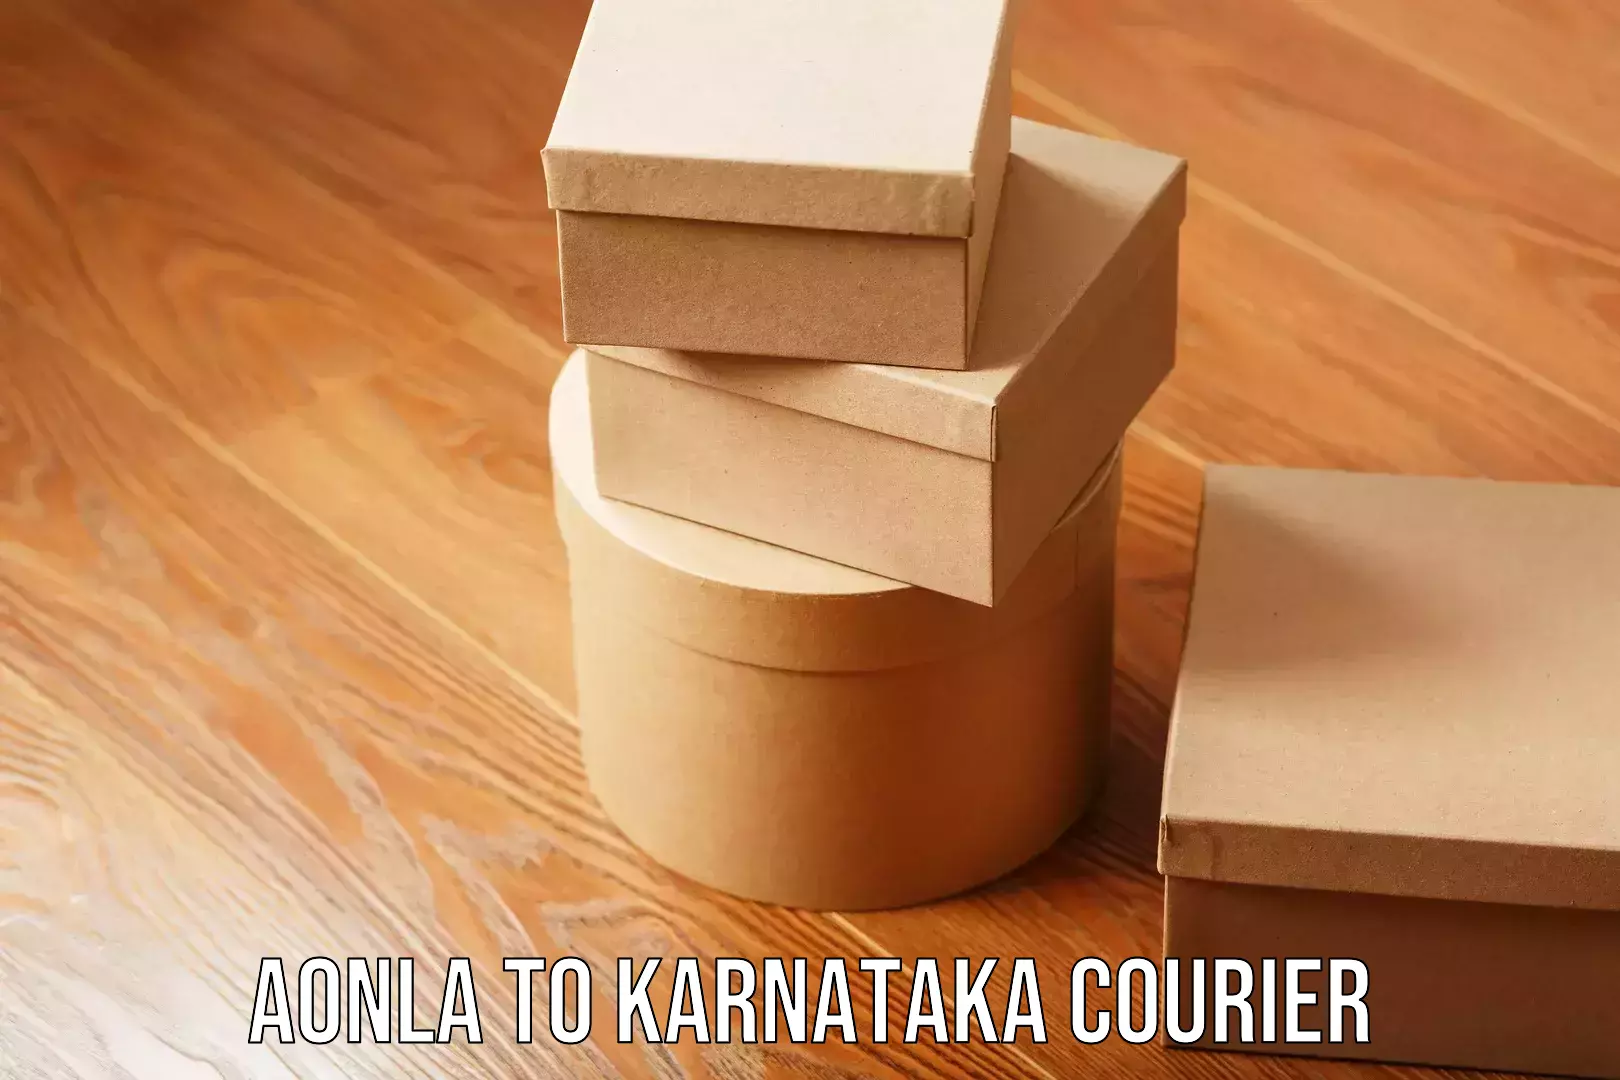 Modern courier technology Aonla to Karnataka